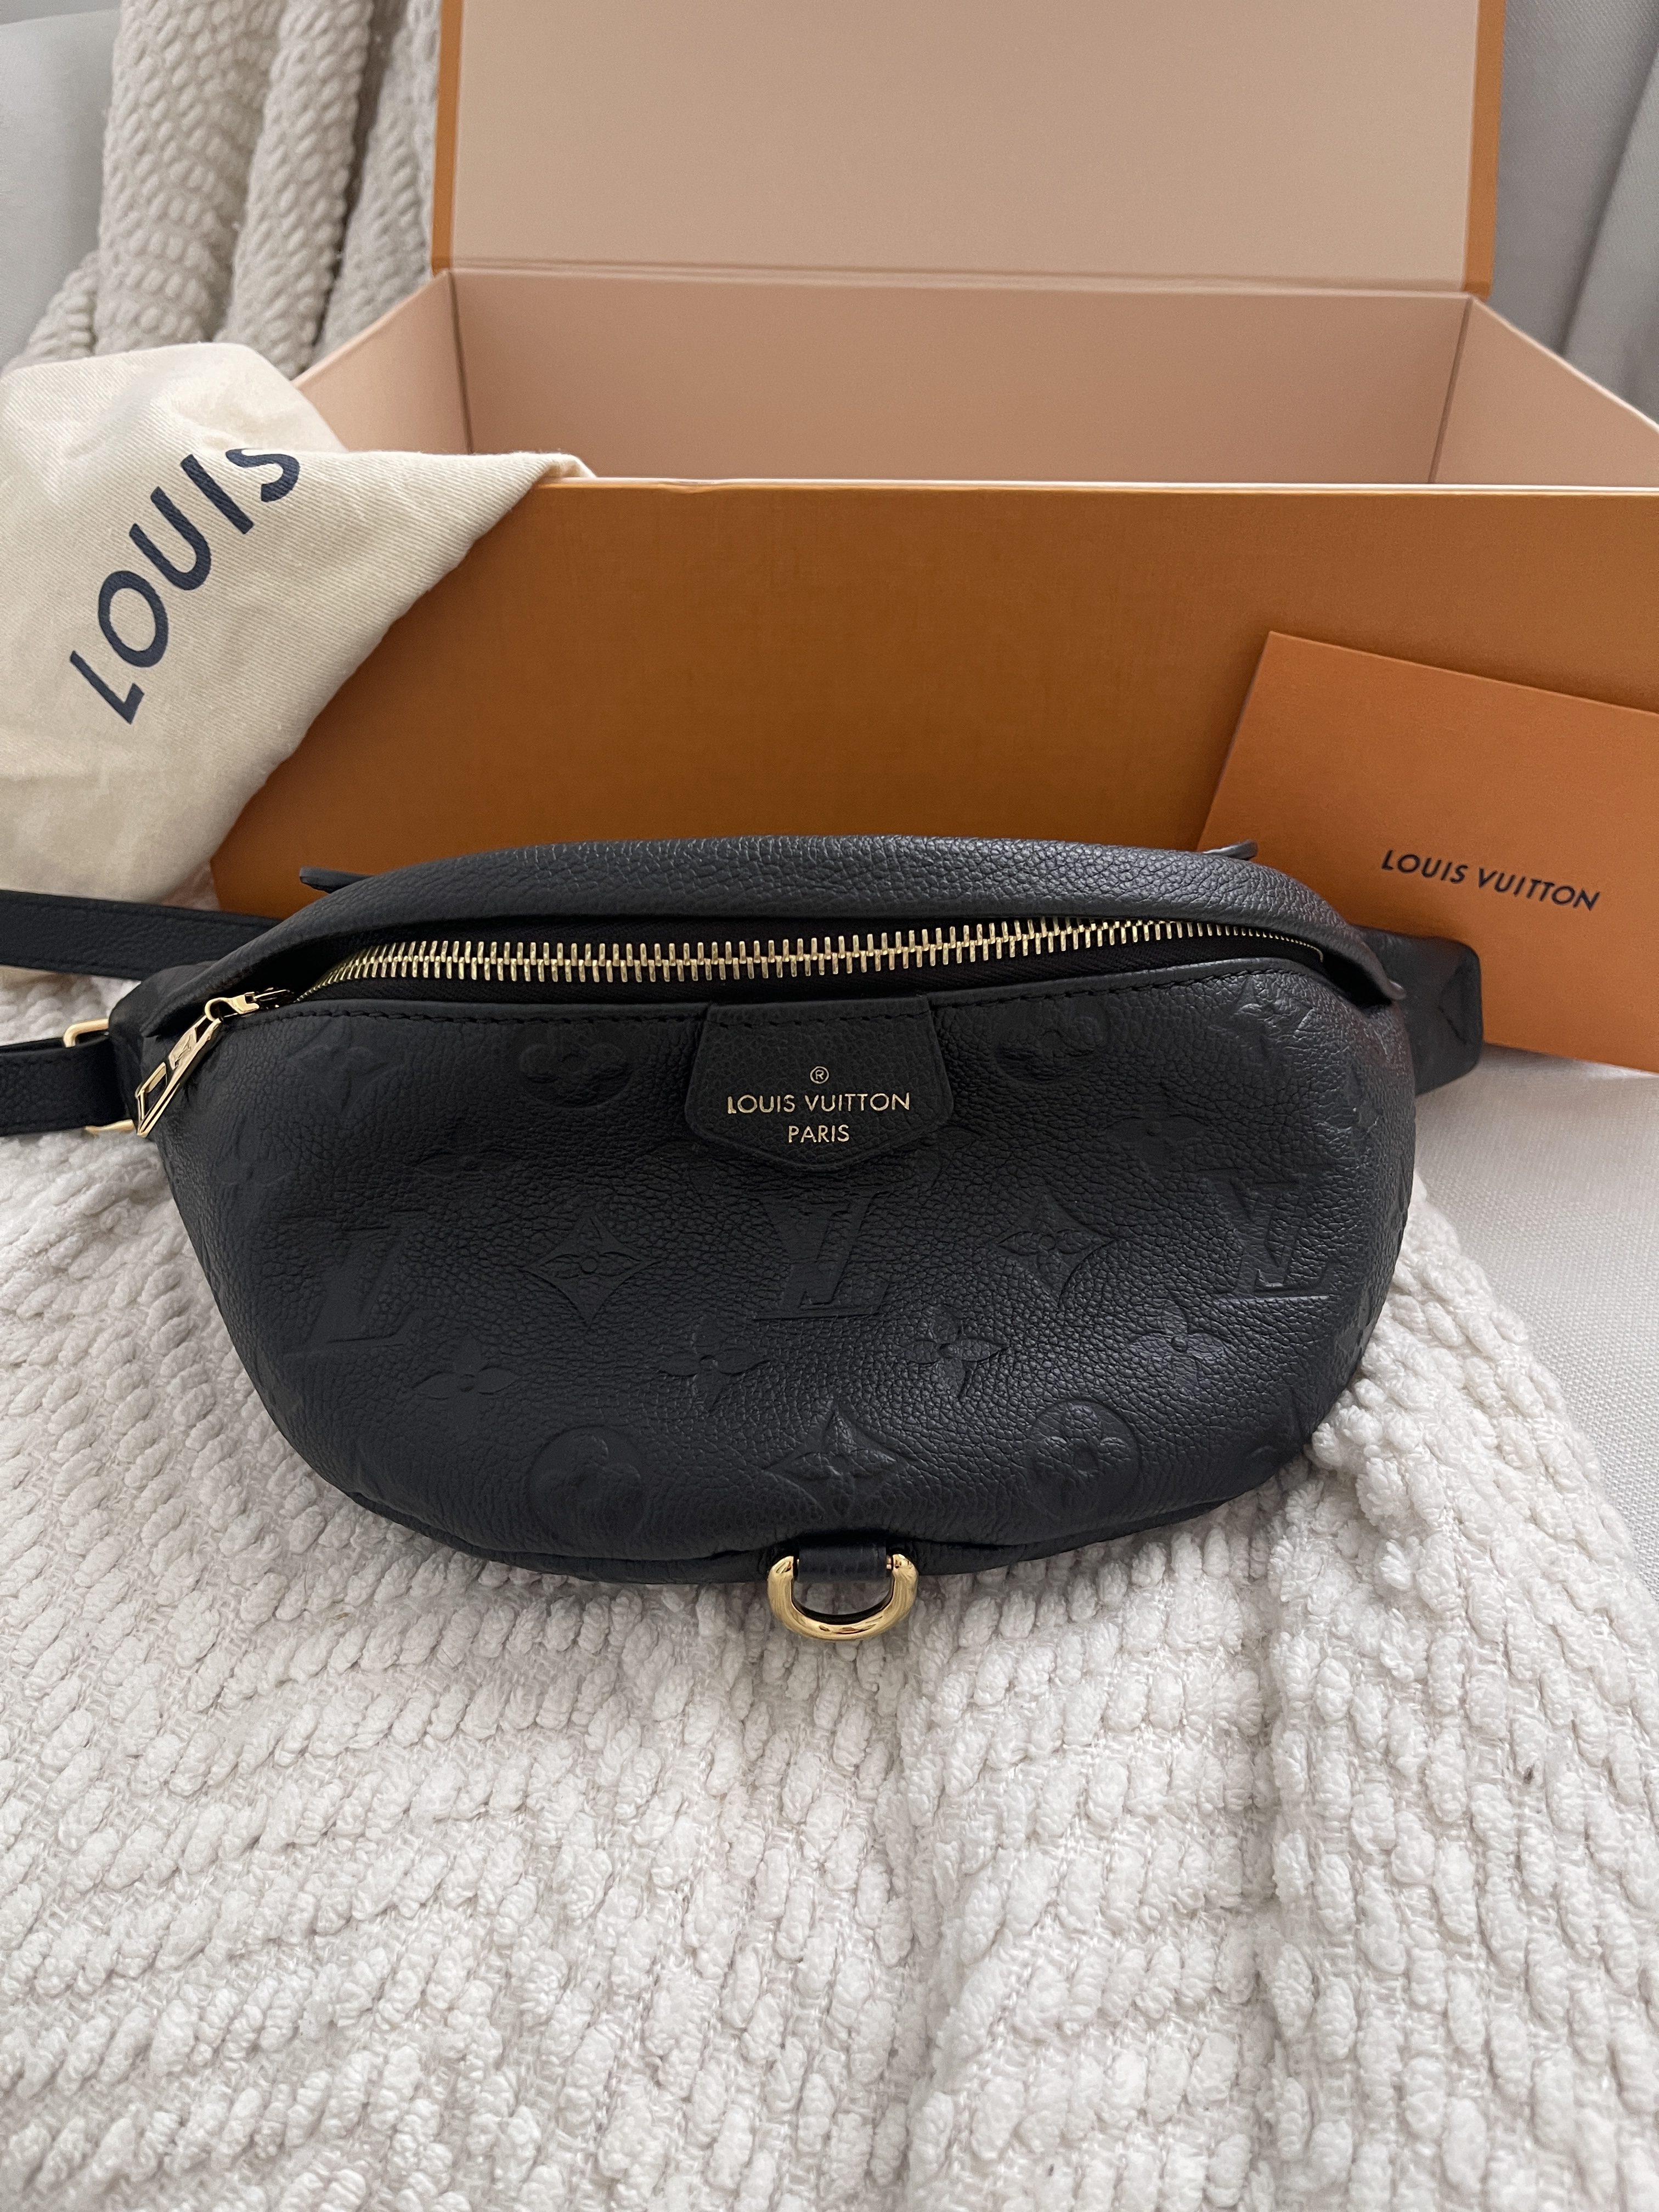 Louis Vuitton 2019 SOLD OUT Bum Bag, Box, dust bag